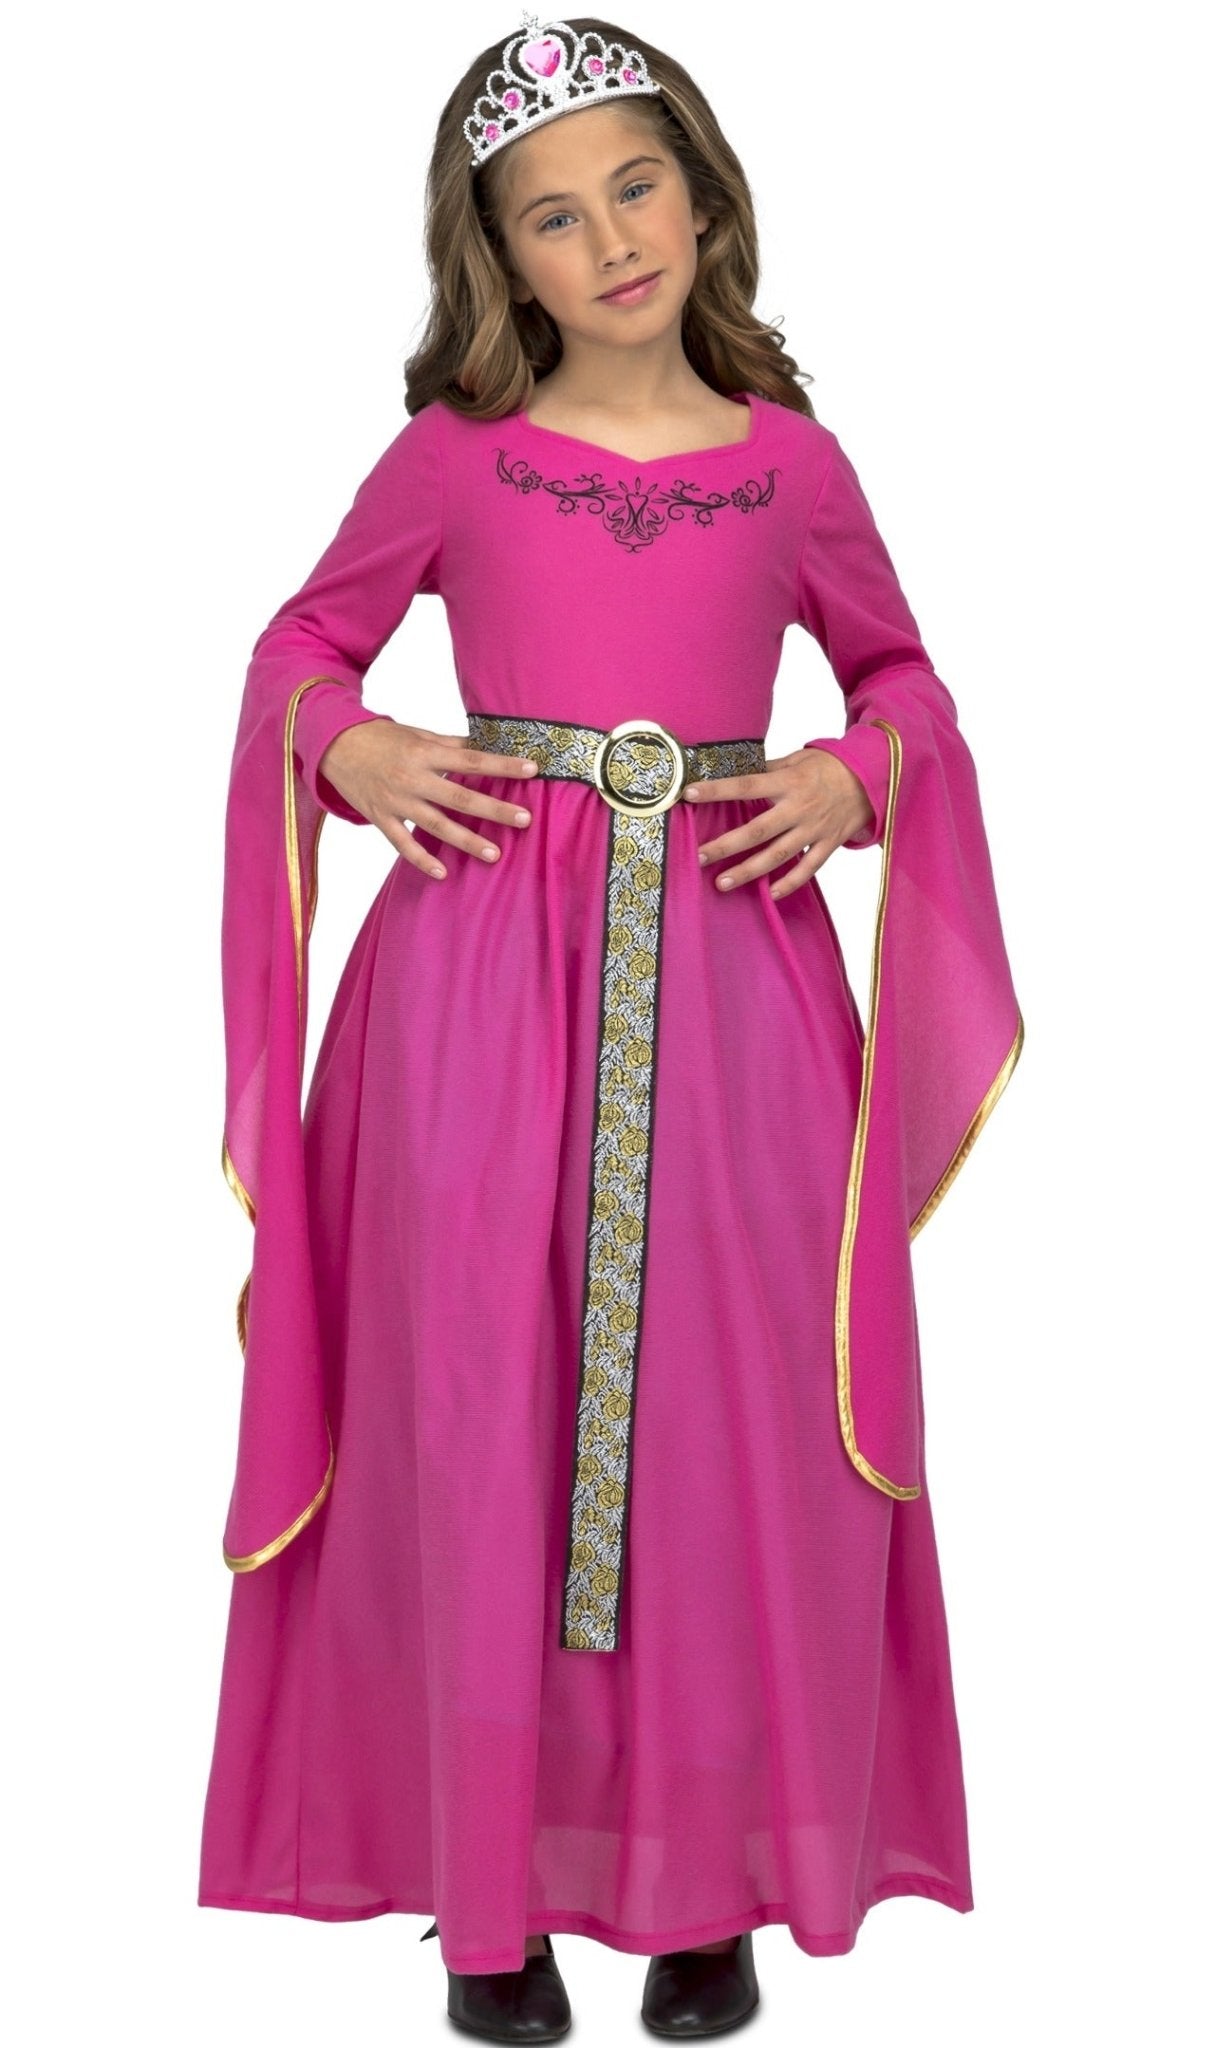 Disfraz de Princesa Medieval Rosa para niña I Don Disfraz